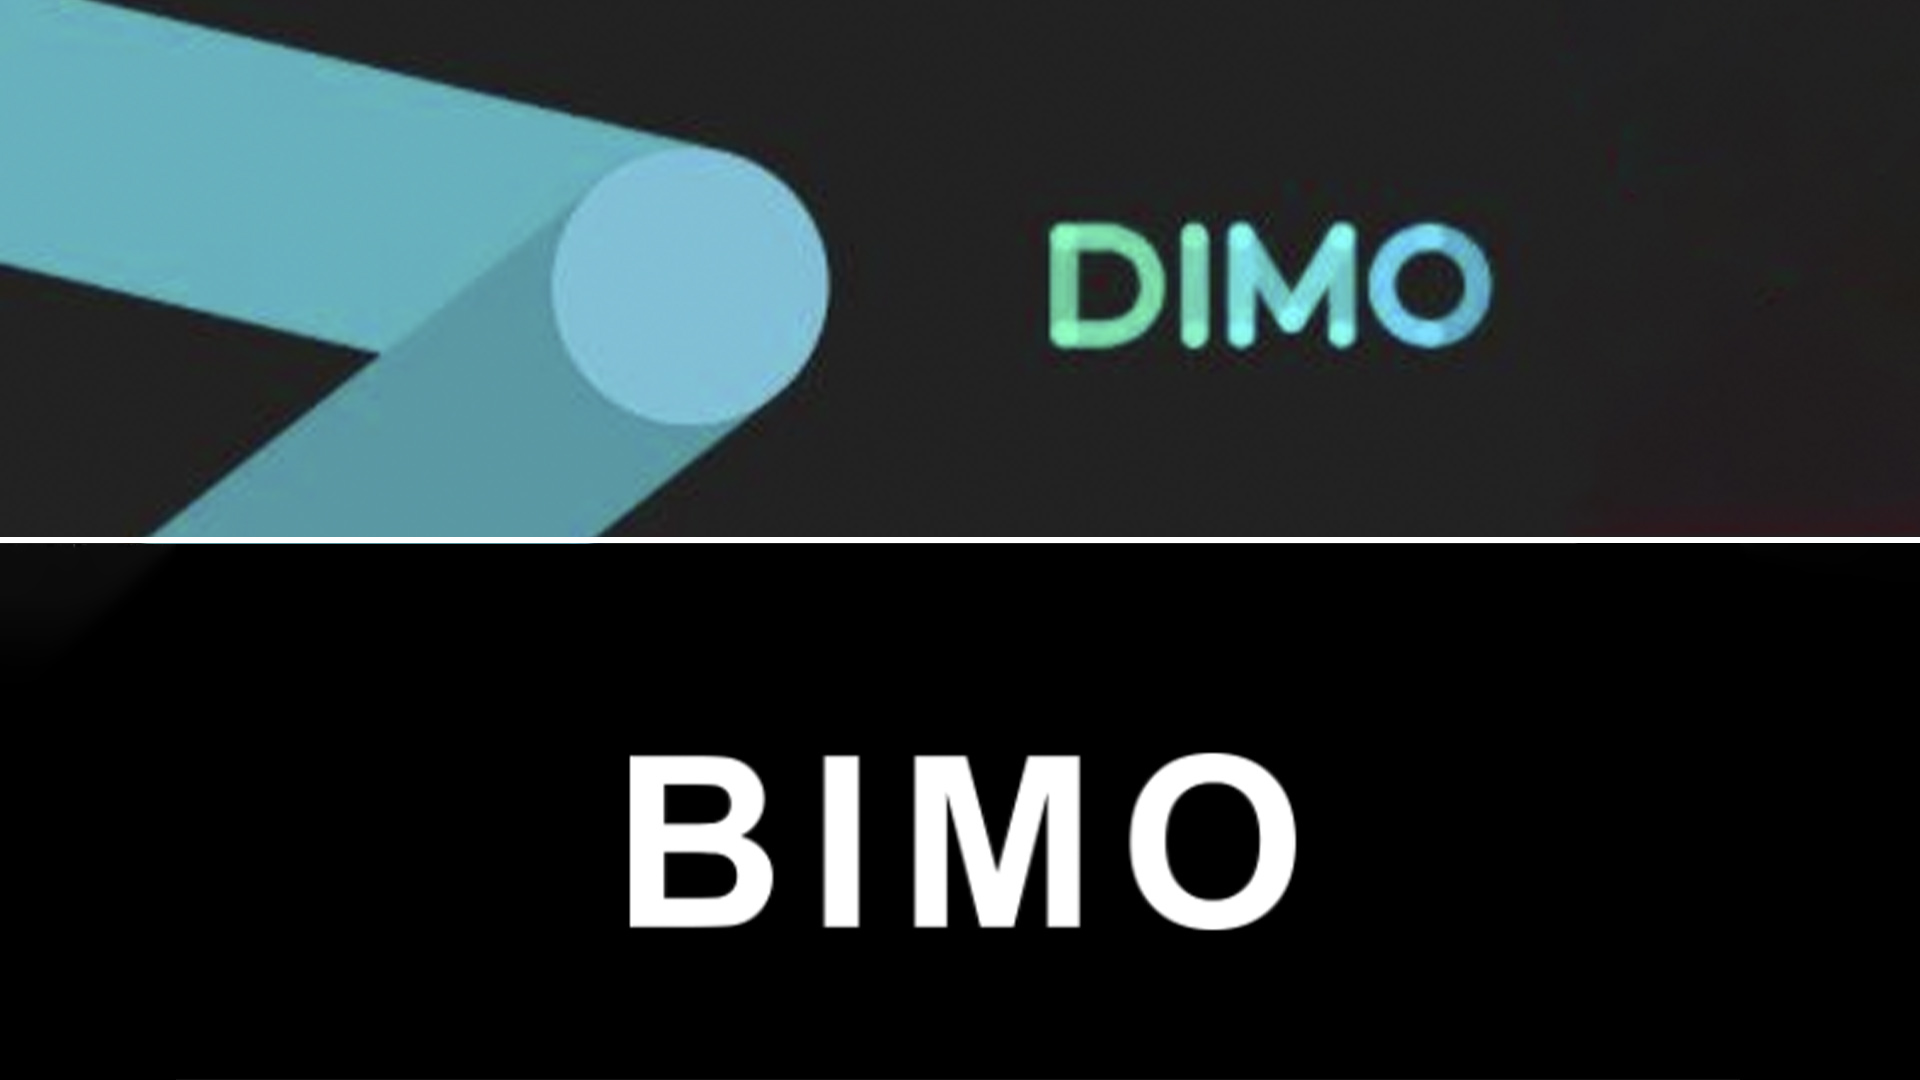 Dimo, de Play Digital, y Bimo, de Prisma Medios de Pago, protagonizaron un conflicto de marcas y de espacios de negocio.